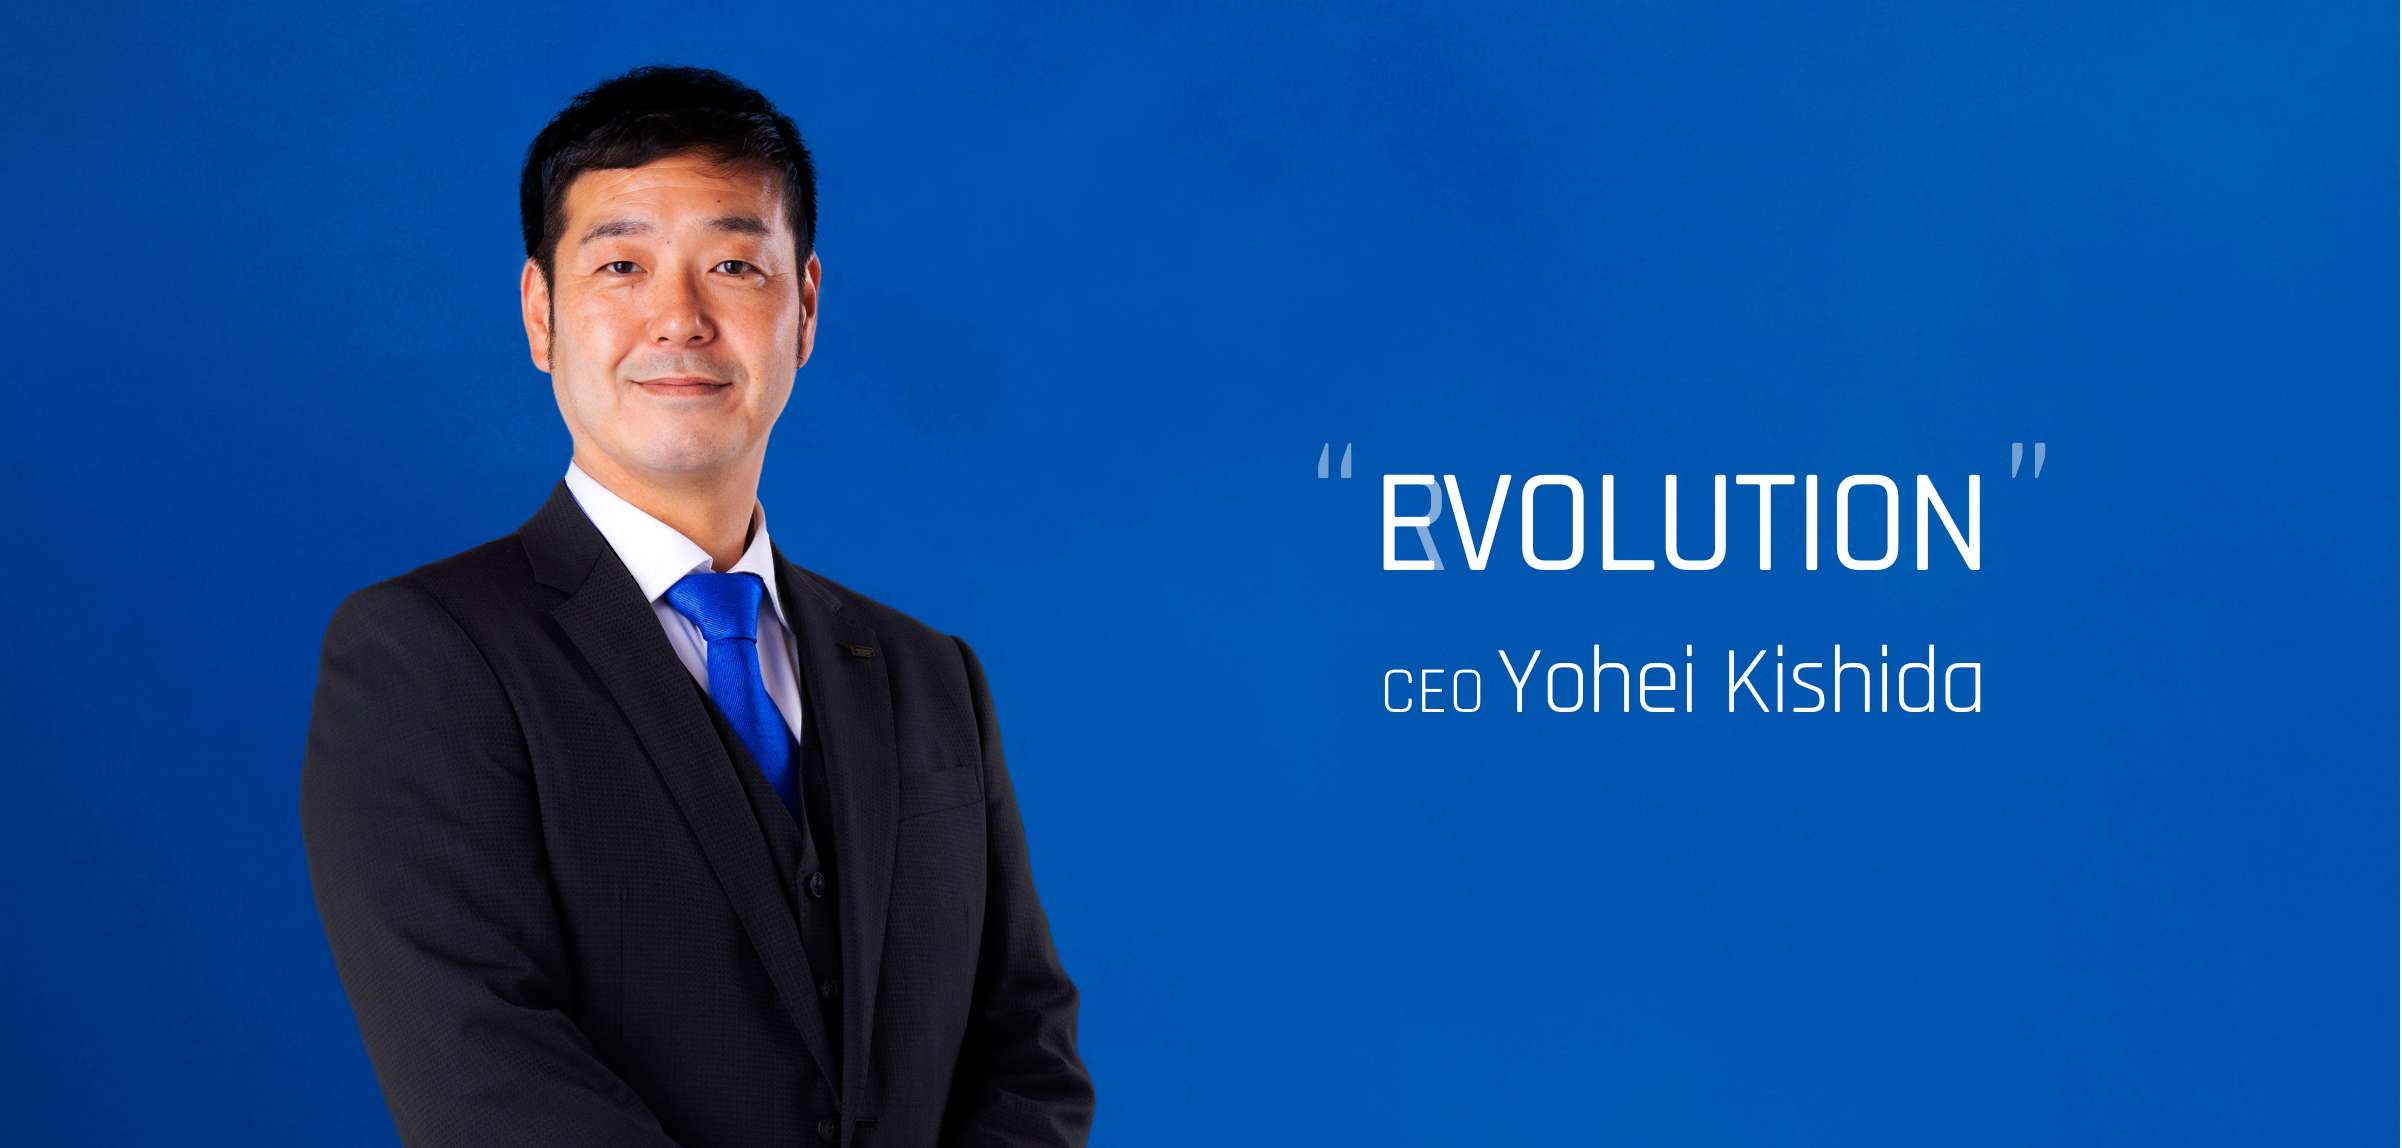 “EVOLUTION” CEO Yohei Kishida